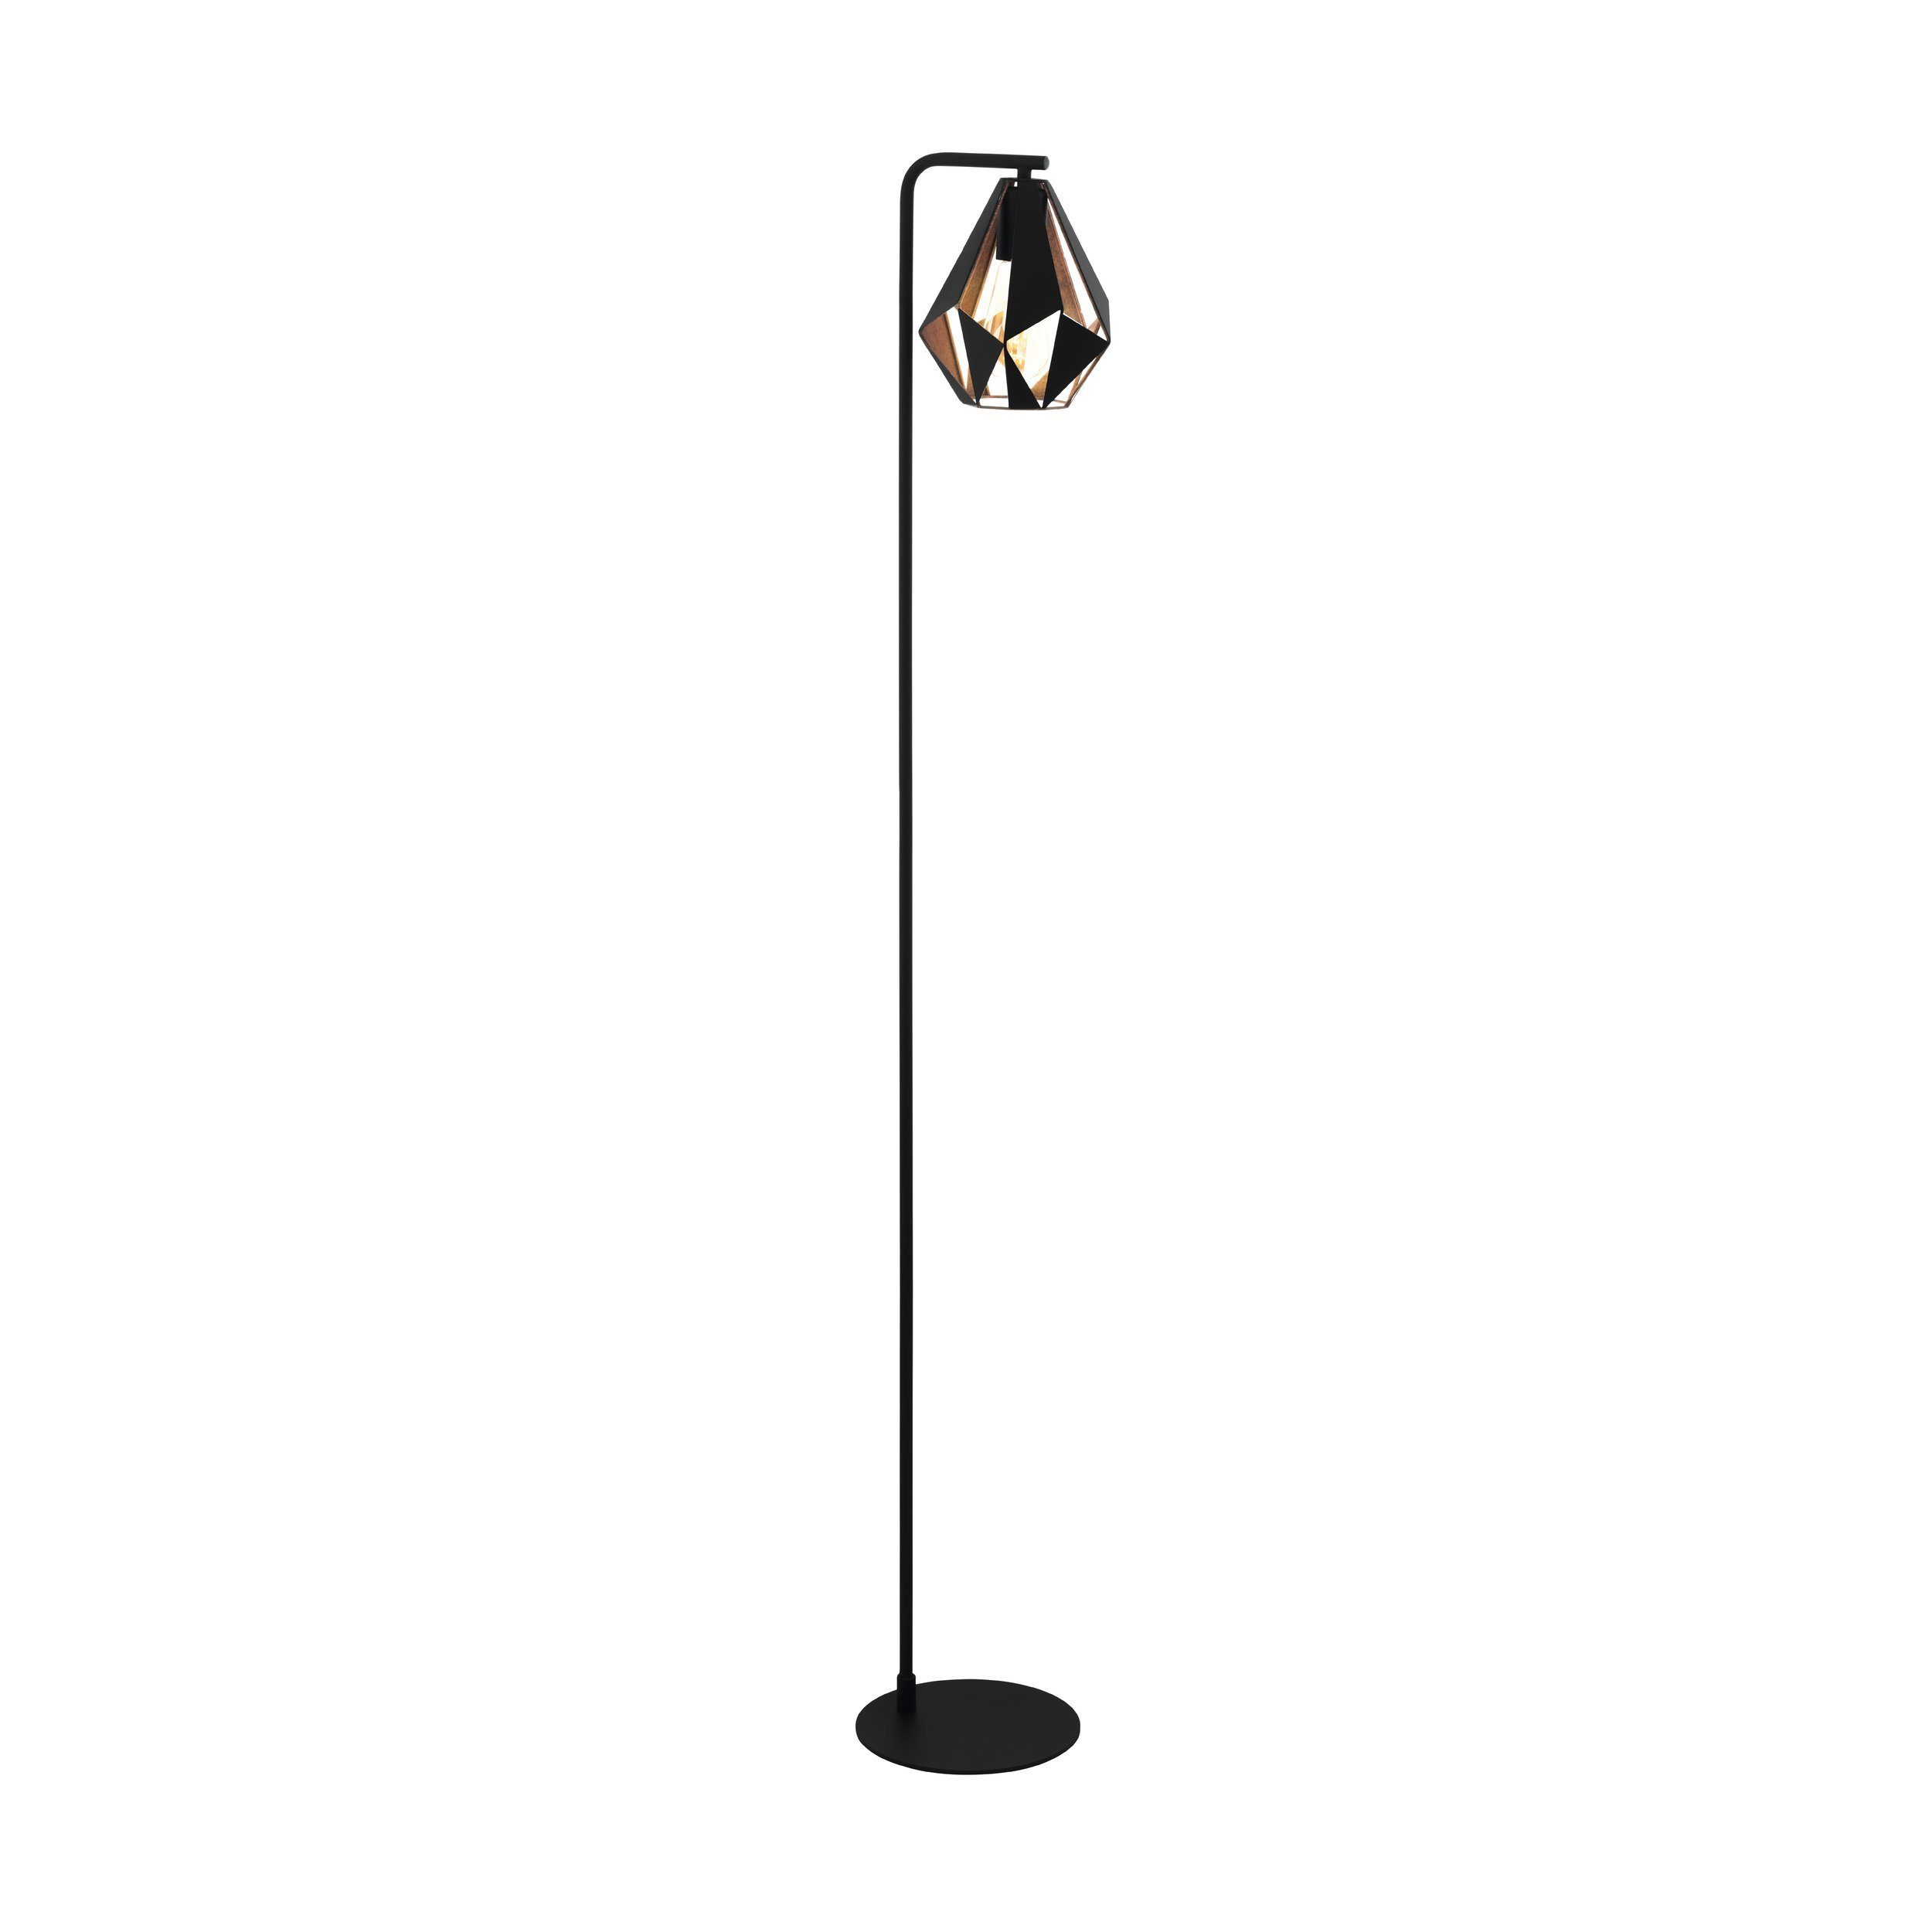 EGLO LED Stehlampe Carlton 4, Leuchtmittel exklusive, Vintage Stehleuchte, Standleuchte, Schwarz, E27, Trittschalter